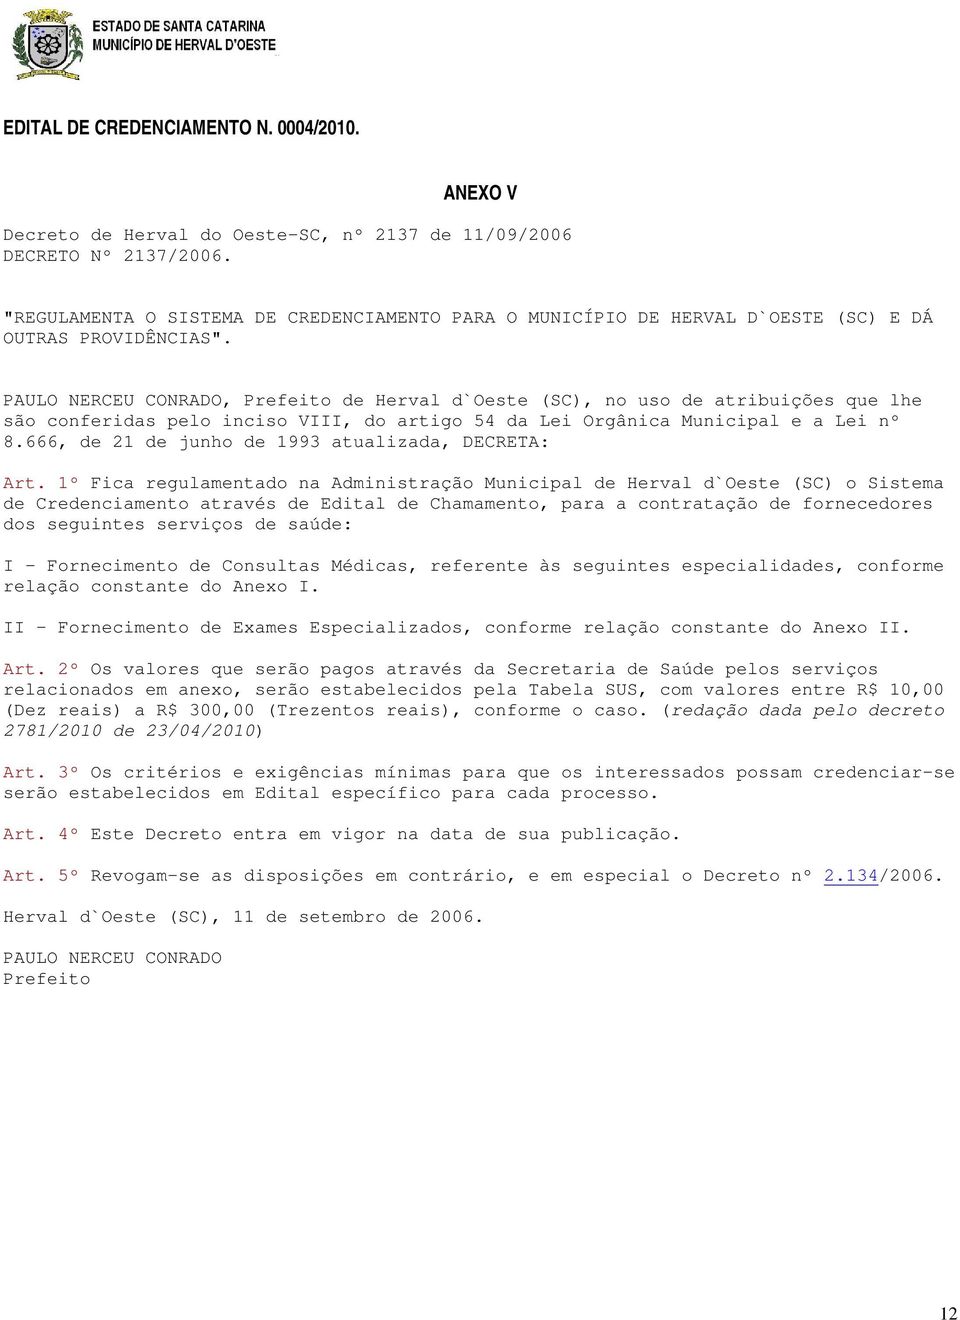 PAULO NERCEU CONRADO, Prefeito de Herval d`oeste (SC), no uso de atribuições que lhe são conferidas pelo inciso VIII, do artigo 54 da Lei Orgânica Municipal e a Lei nº 8.